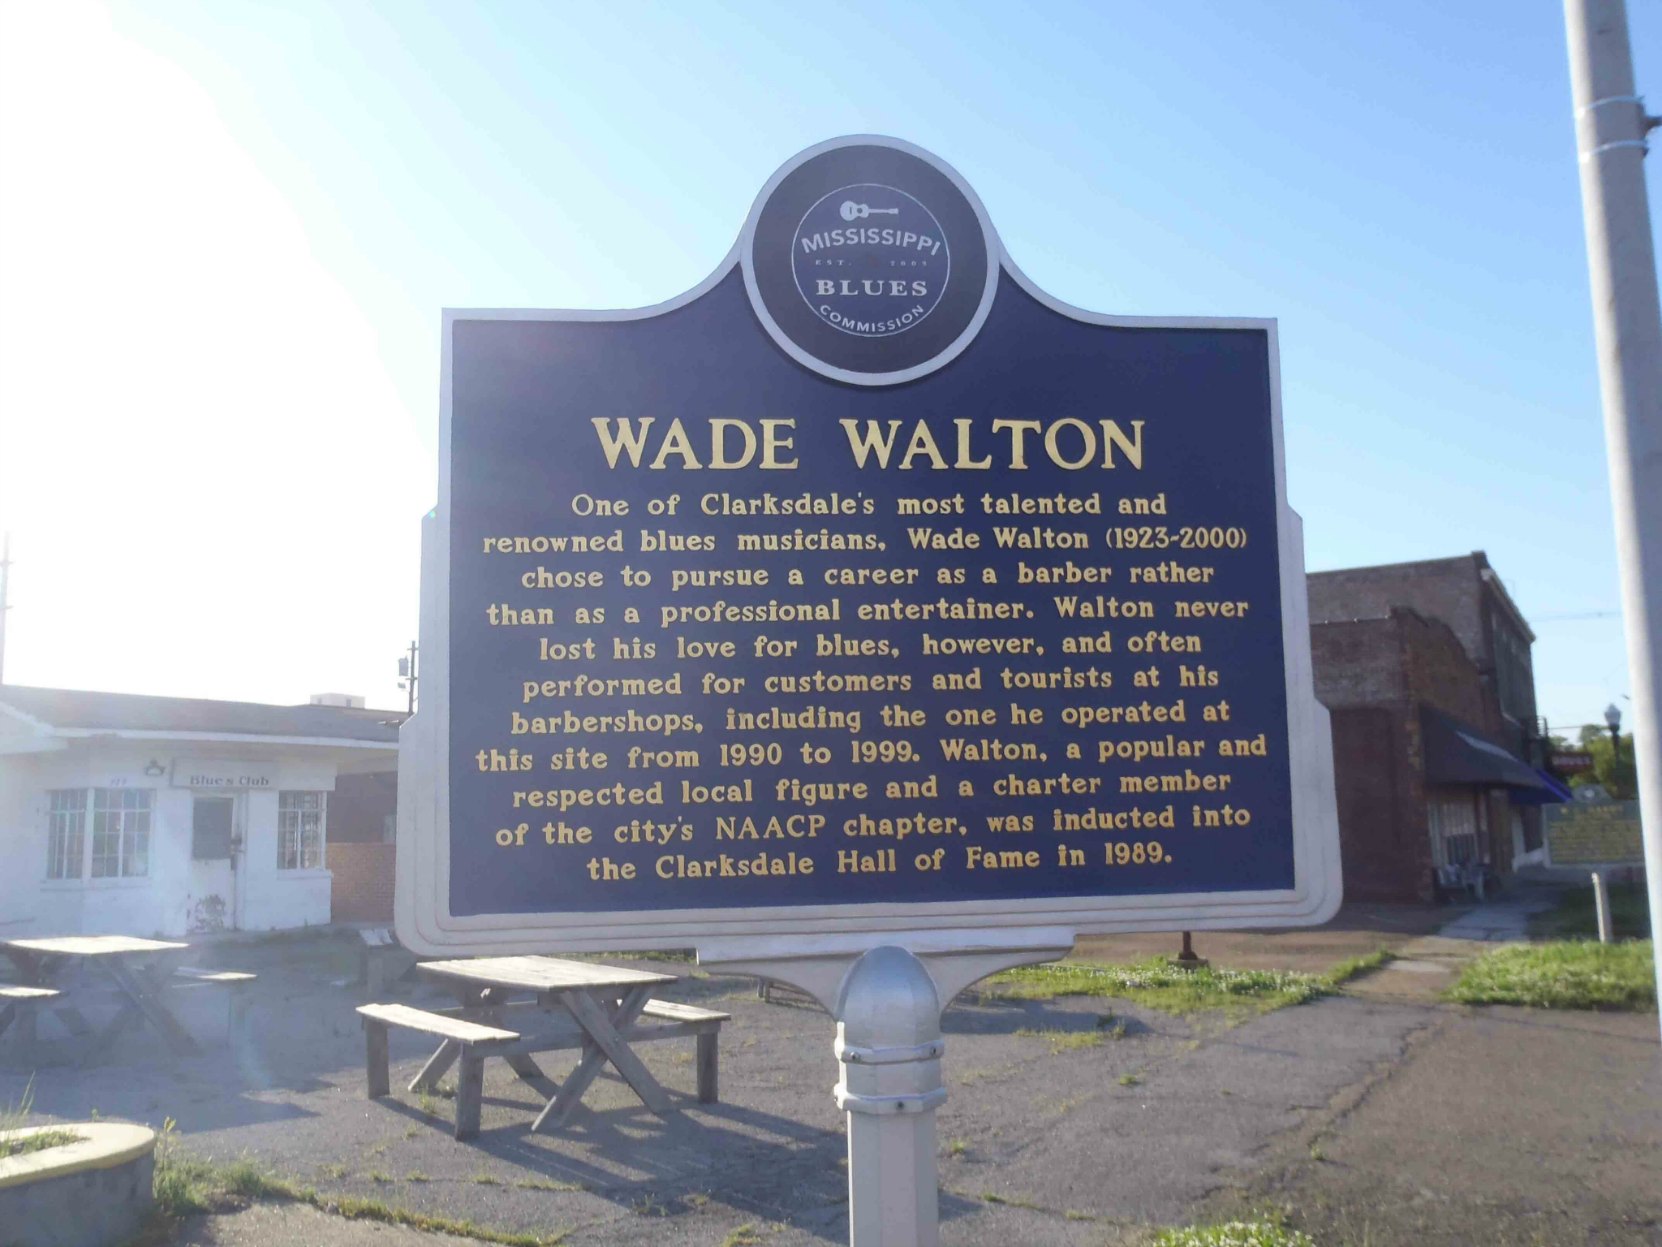 Mississippi Blues Trail marker for Wade Walton, Clarksdale, Mississippi.